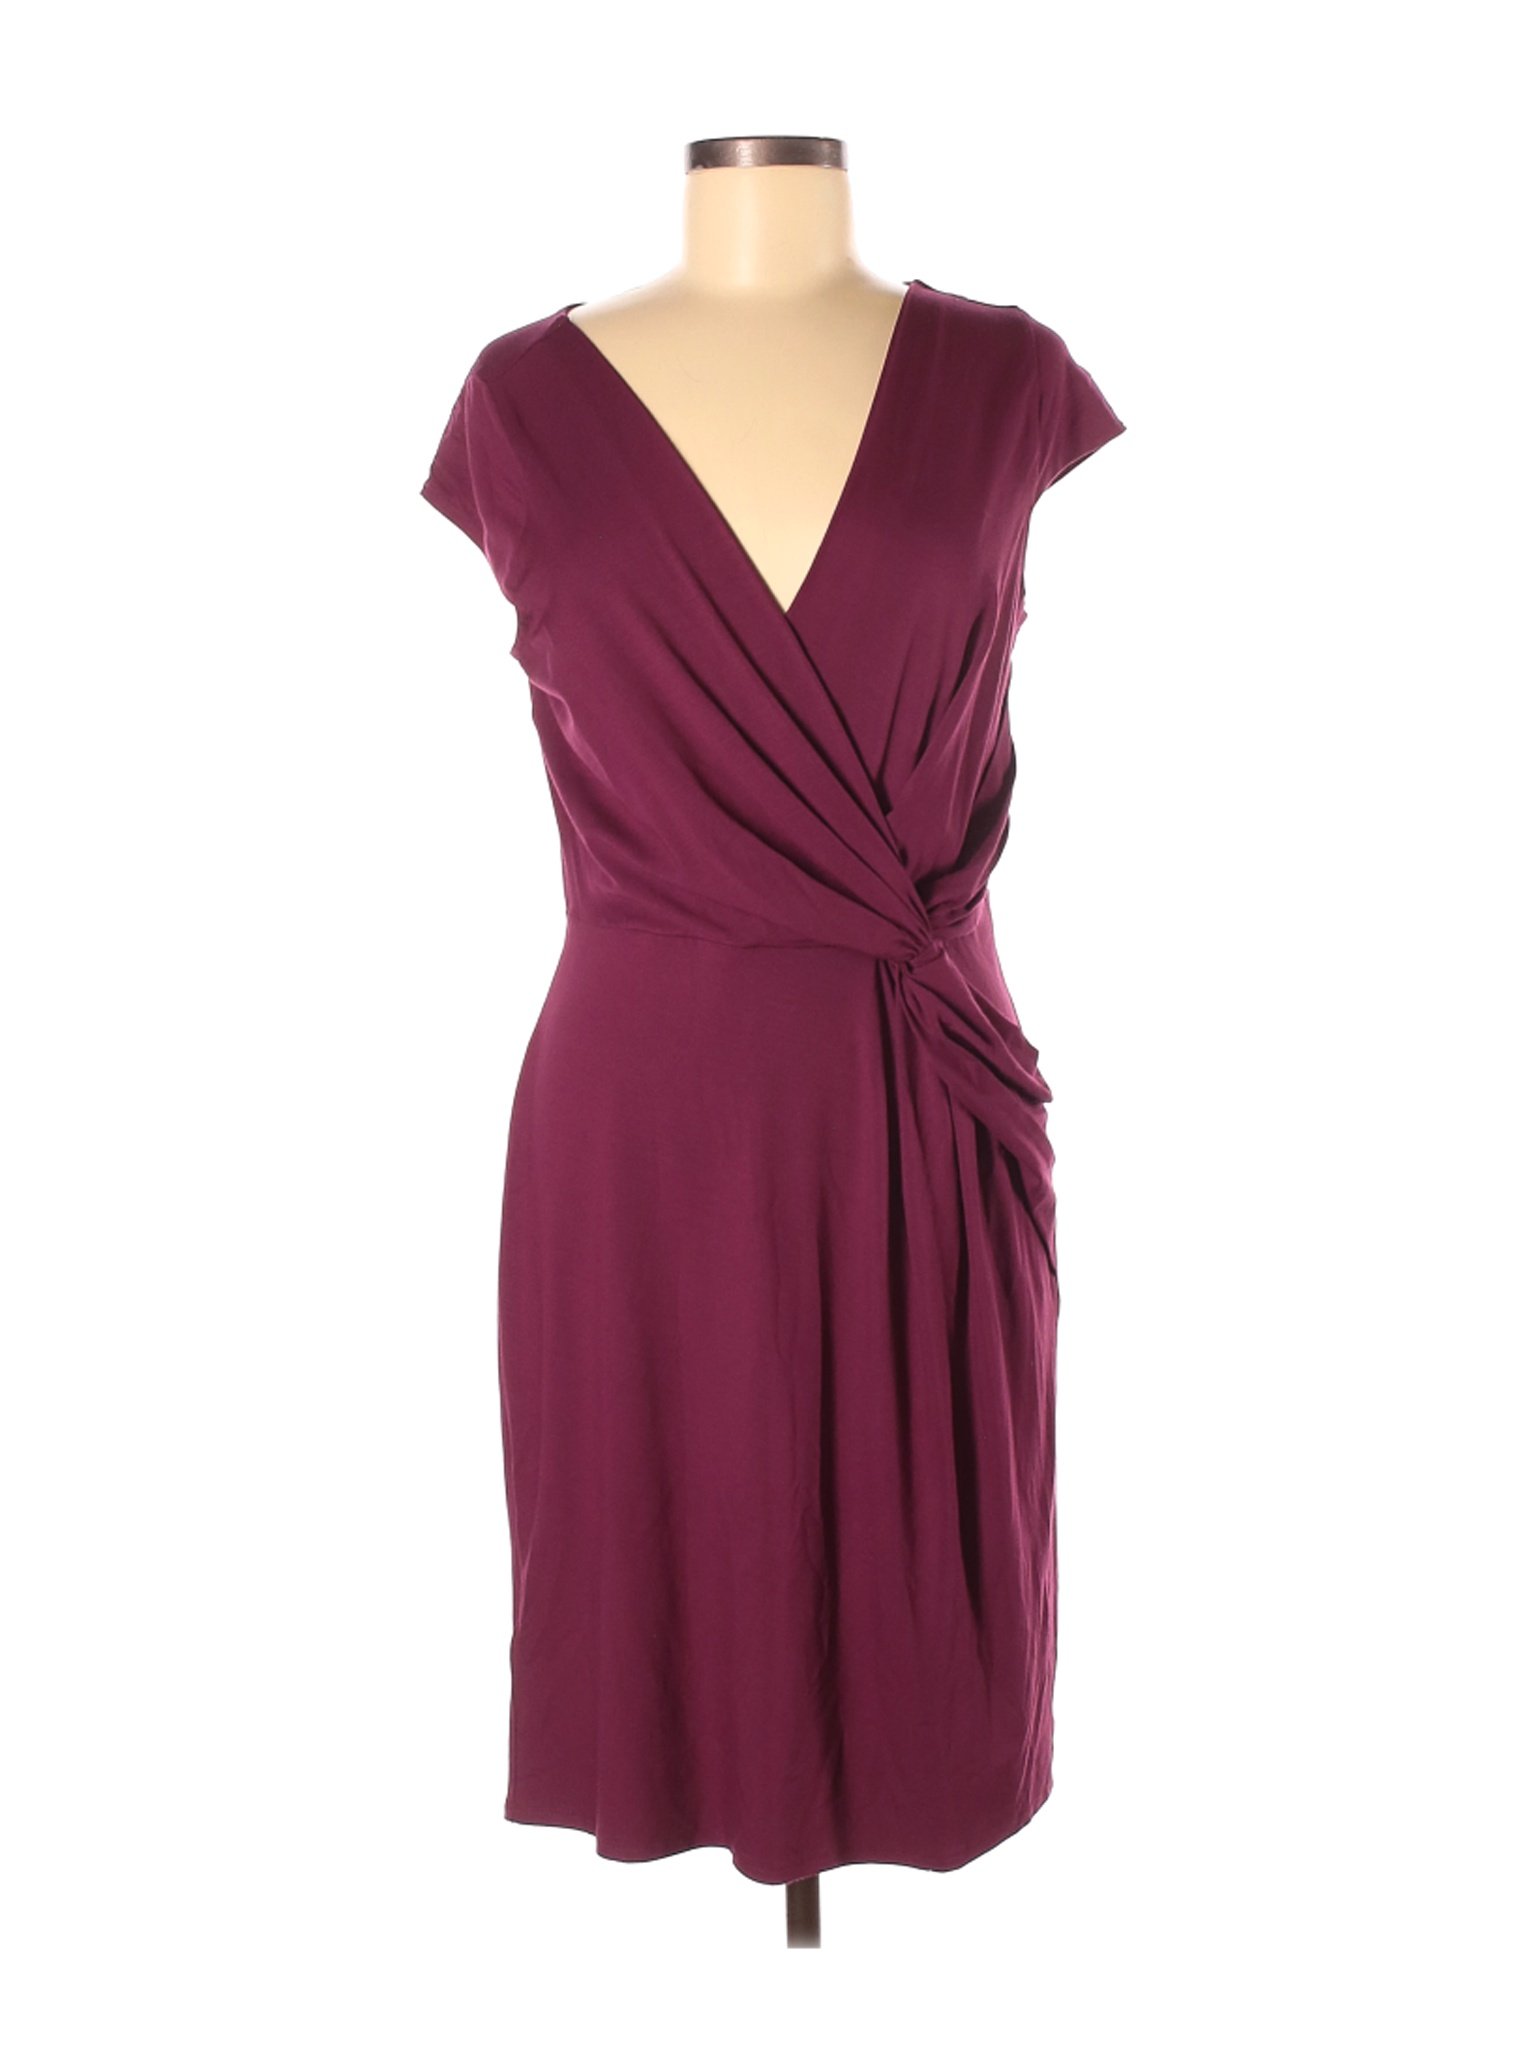 Ann Taylor Women Purple Casual Dress 8 | eBay